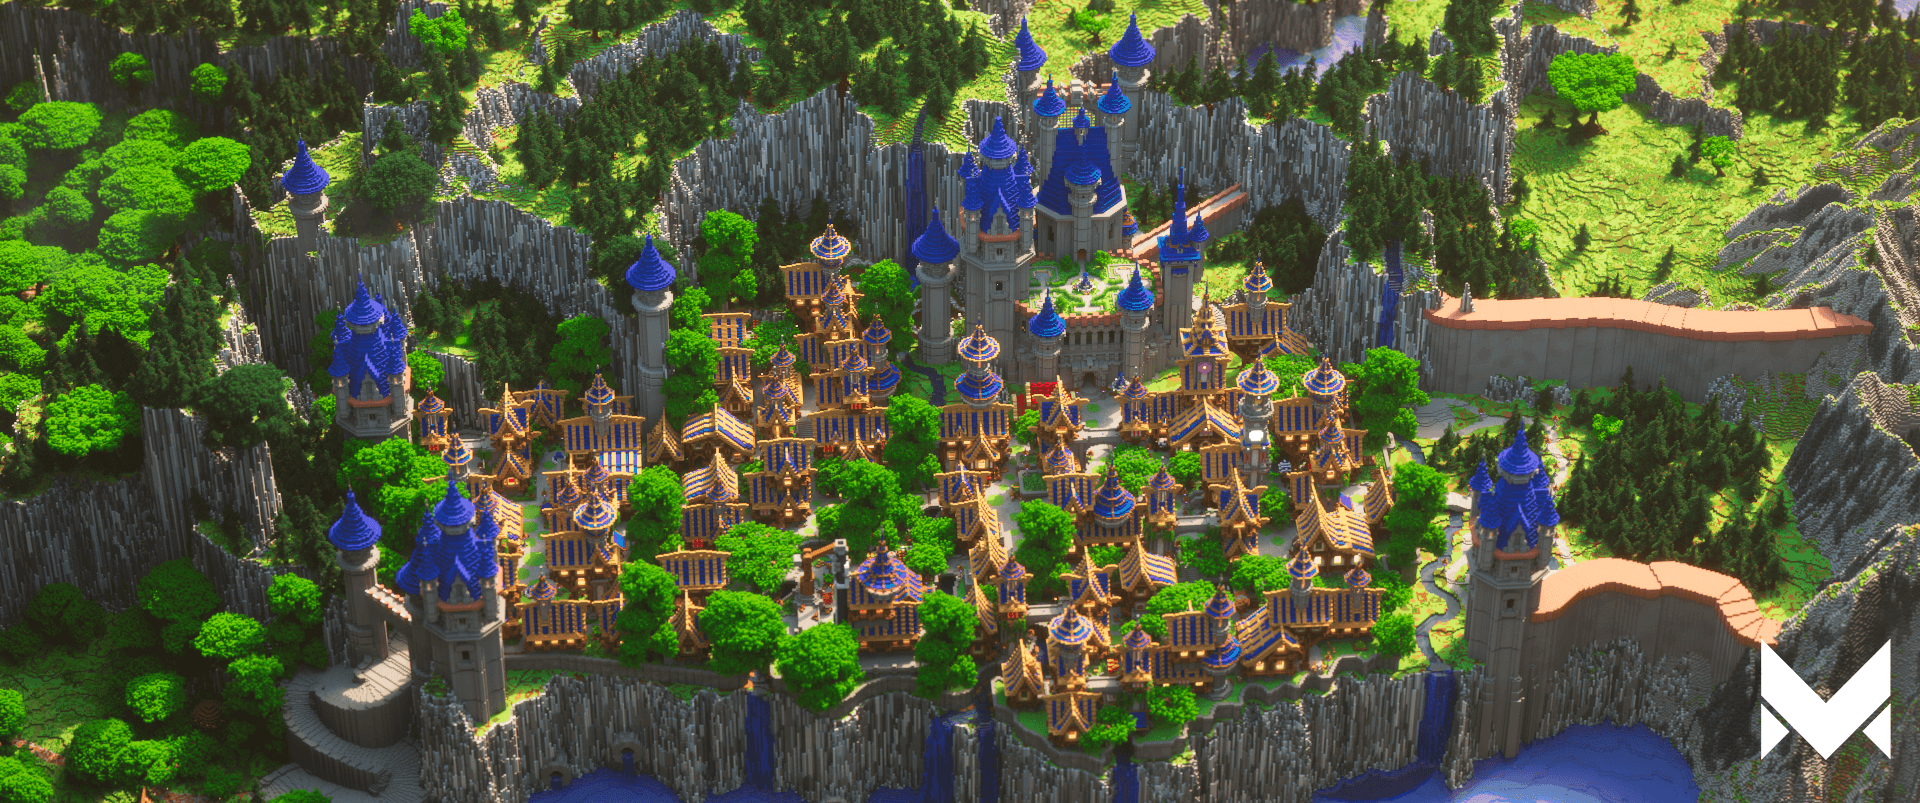 Large Minecraft Background Image